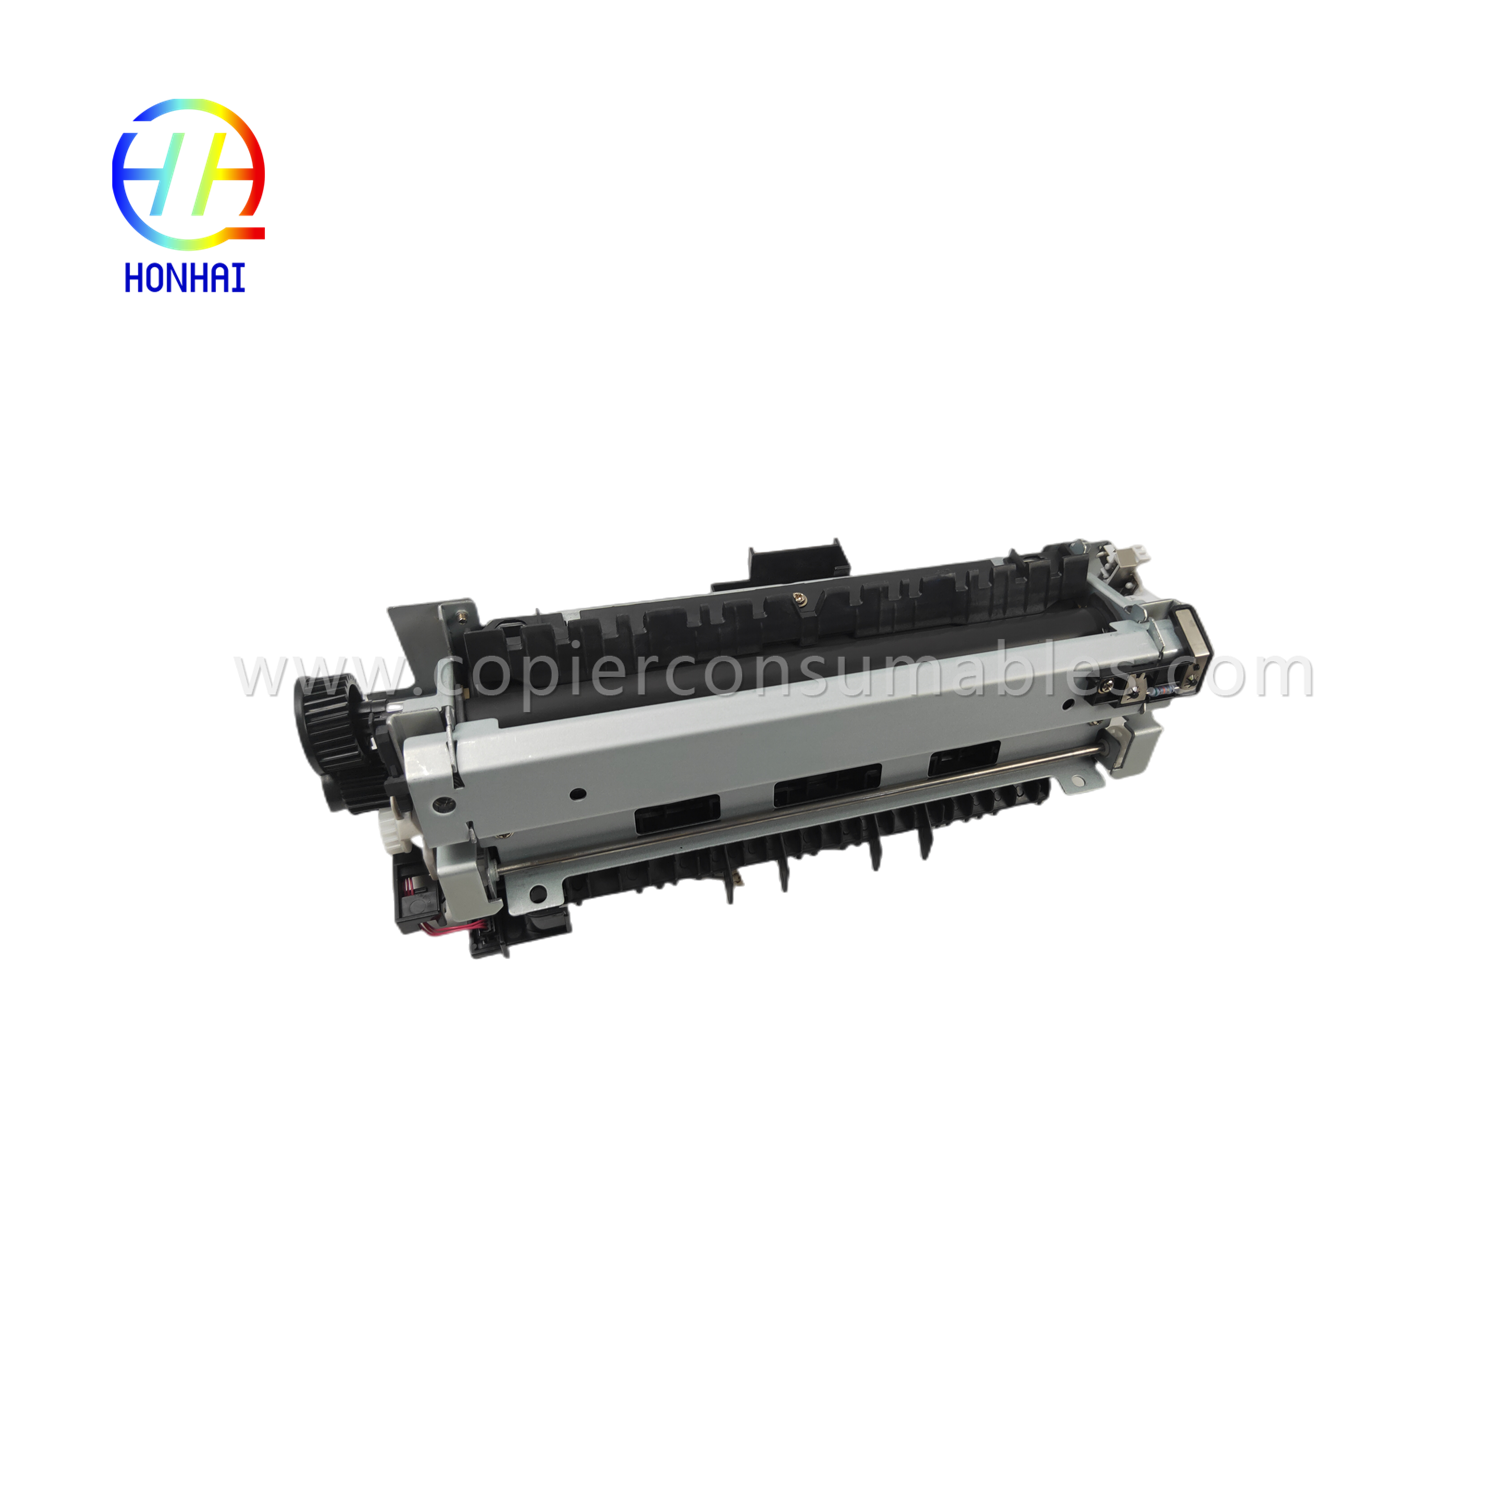 hp-521-525-m521-m525-rm1-8508-rm1-8508-000-fuser-unit-product/